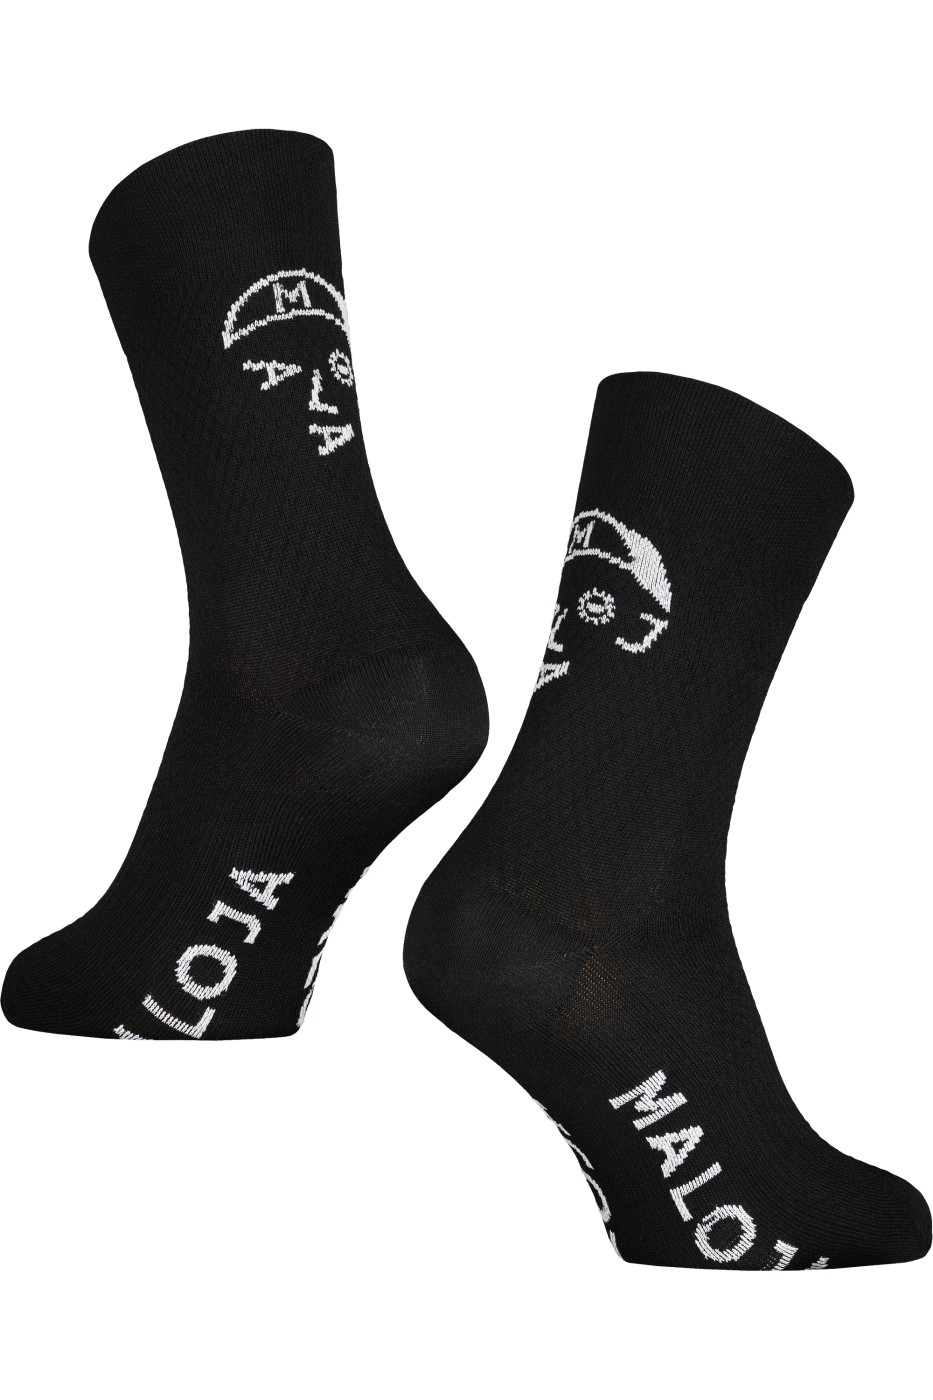 Ponožky MALOJA PaviaM. moonless